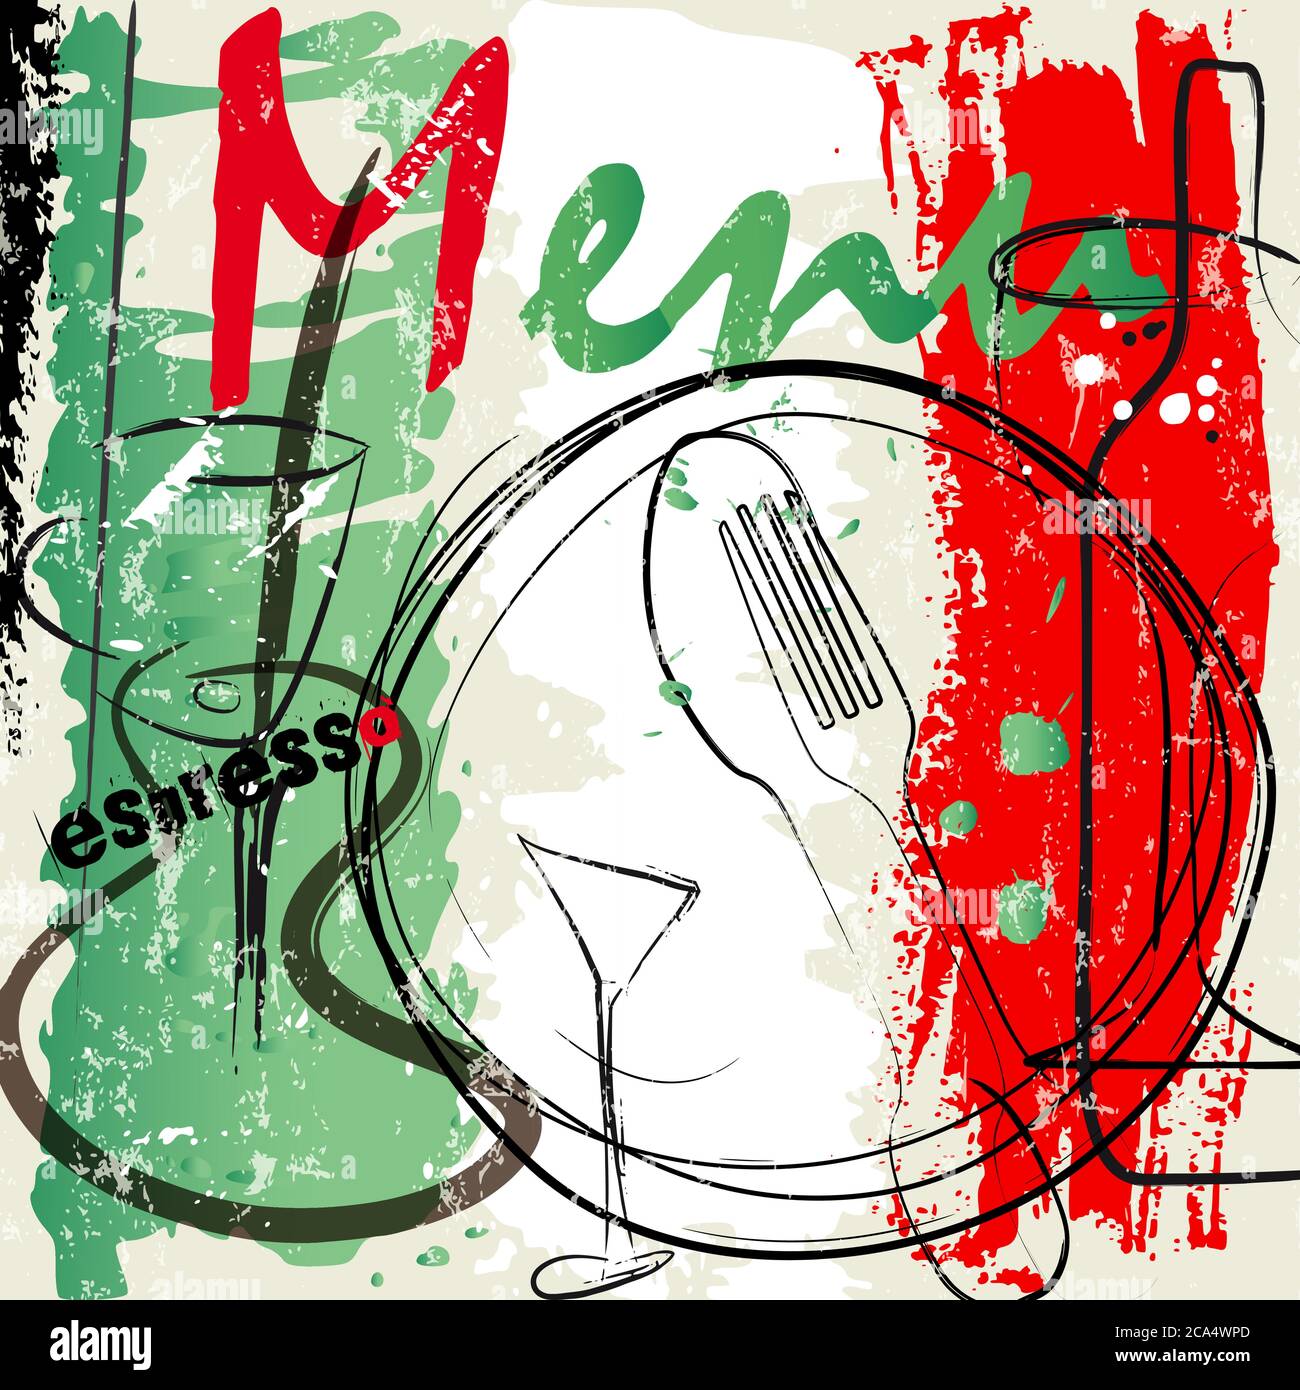 modèle de conception de carte de menu pour le restaurant, avec coups et éclaboussures, grundy, cuisine italienne Illustration de Vecteur